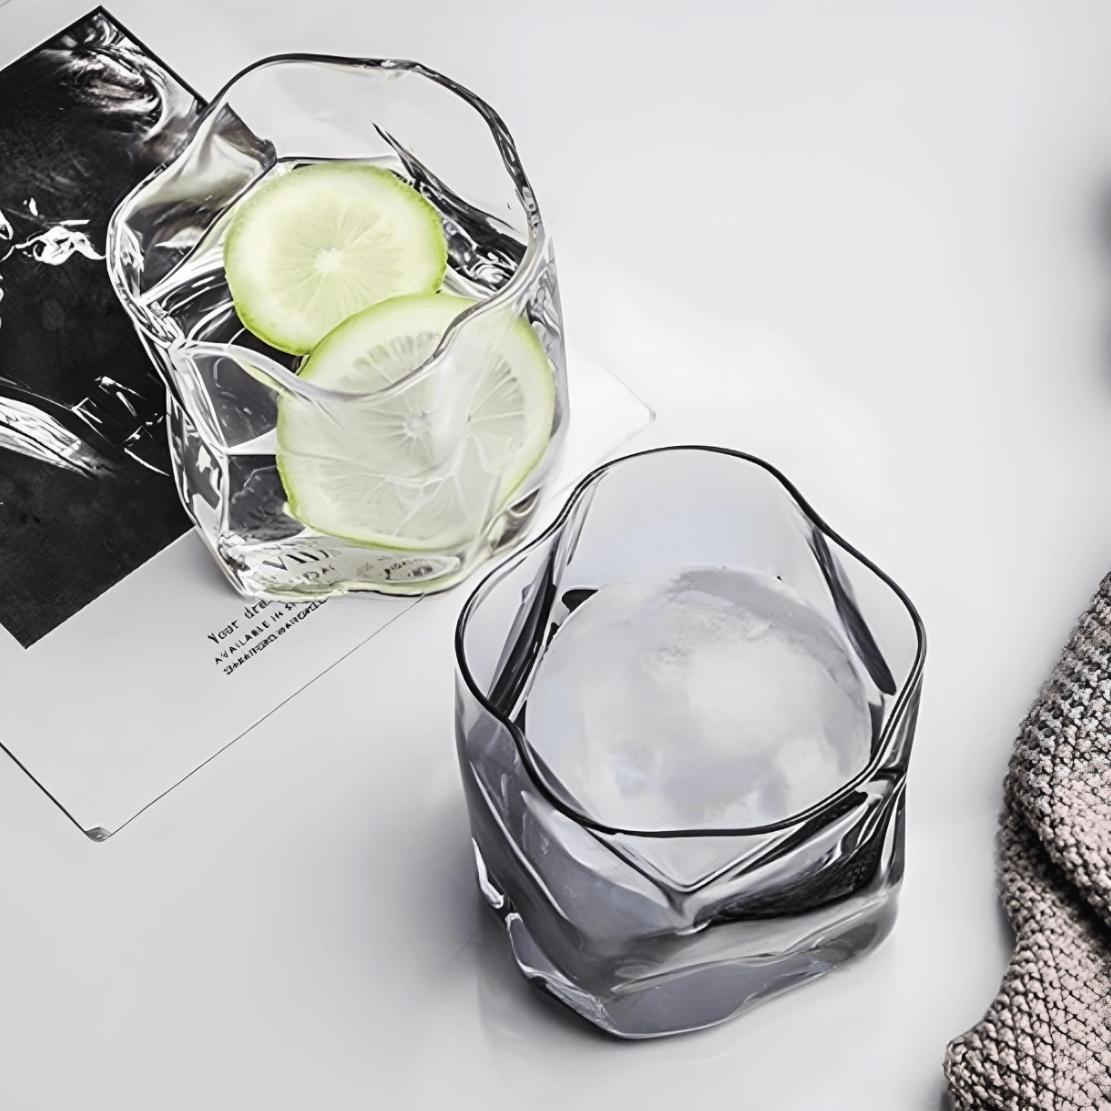 Irregular glass drinkware water glasses